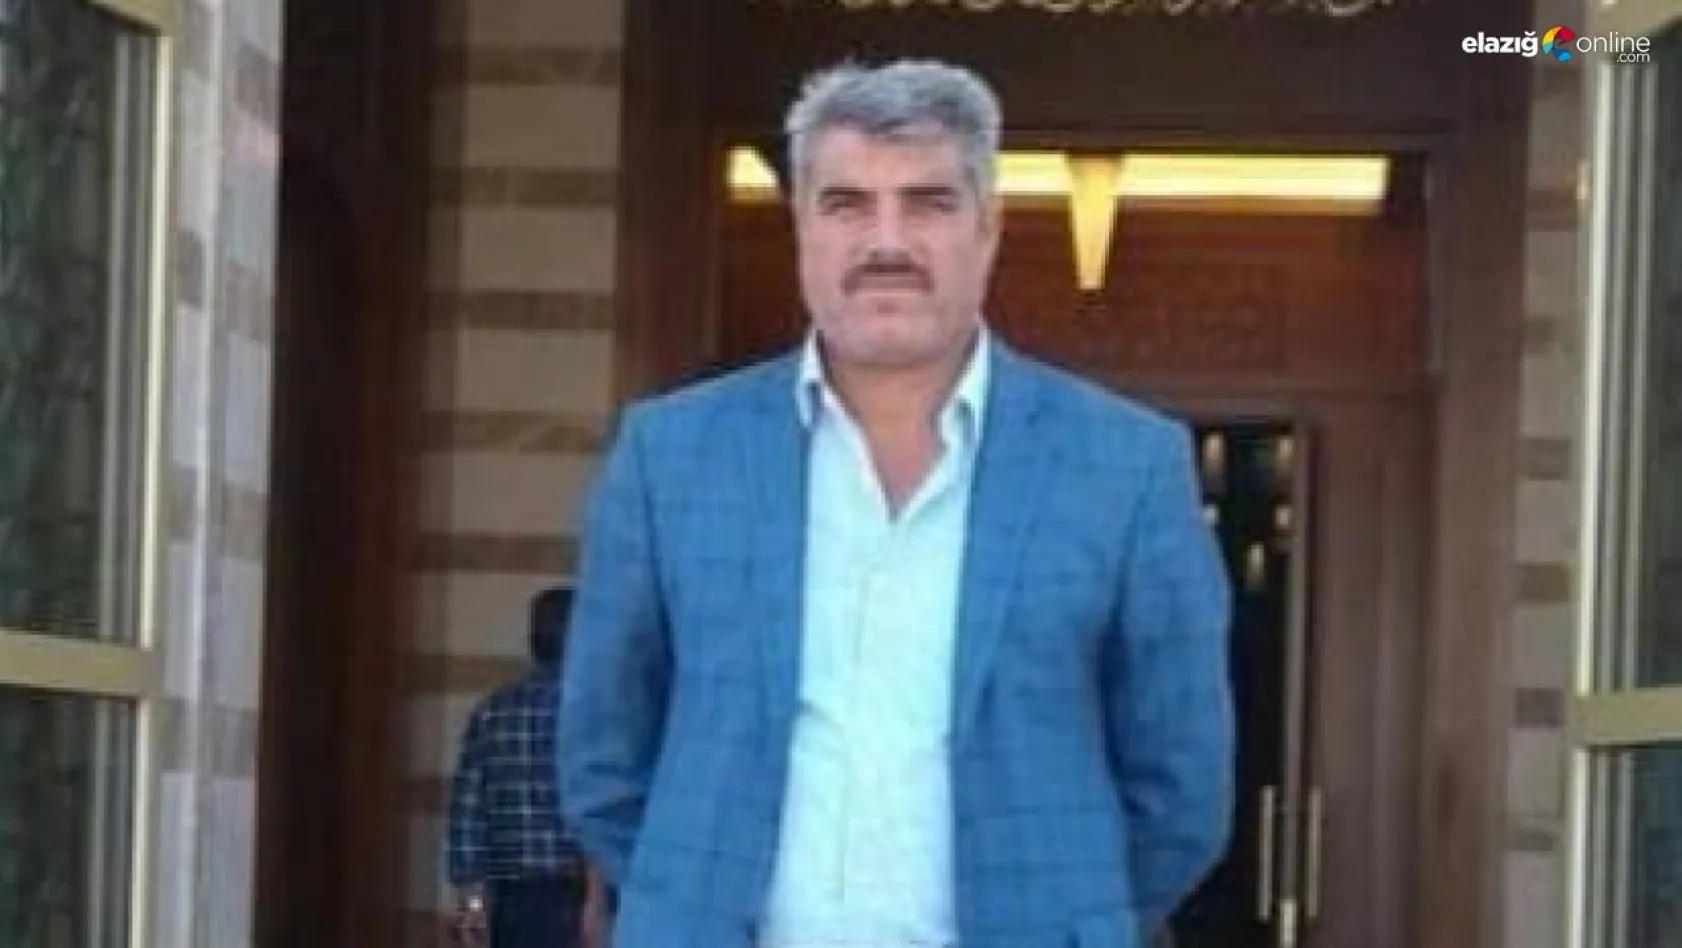 Tunceli'de kaybolan balıkçının cansız bedeni bulundu